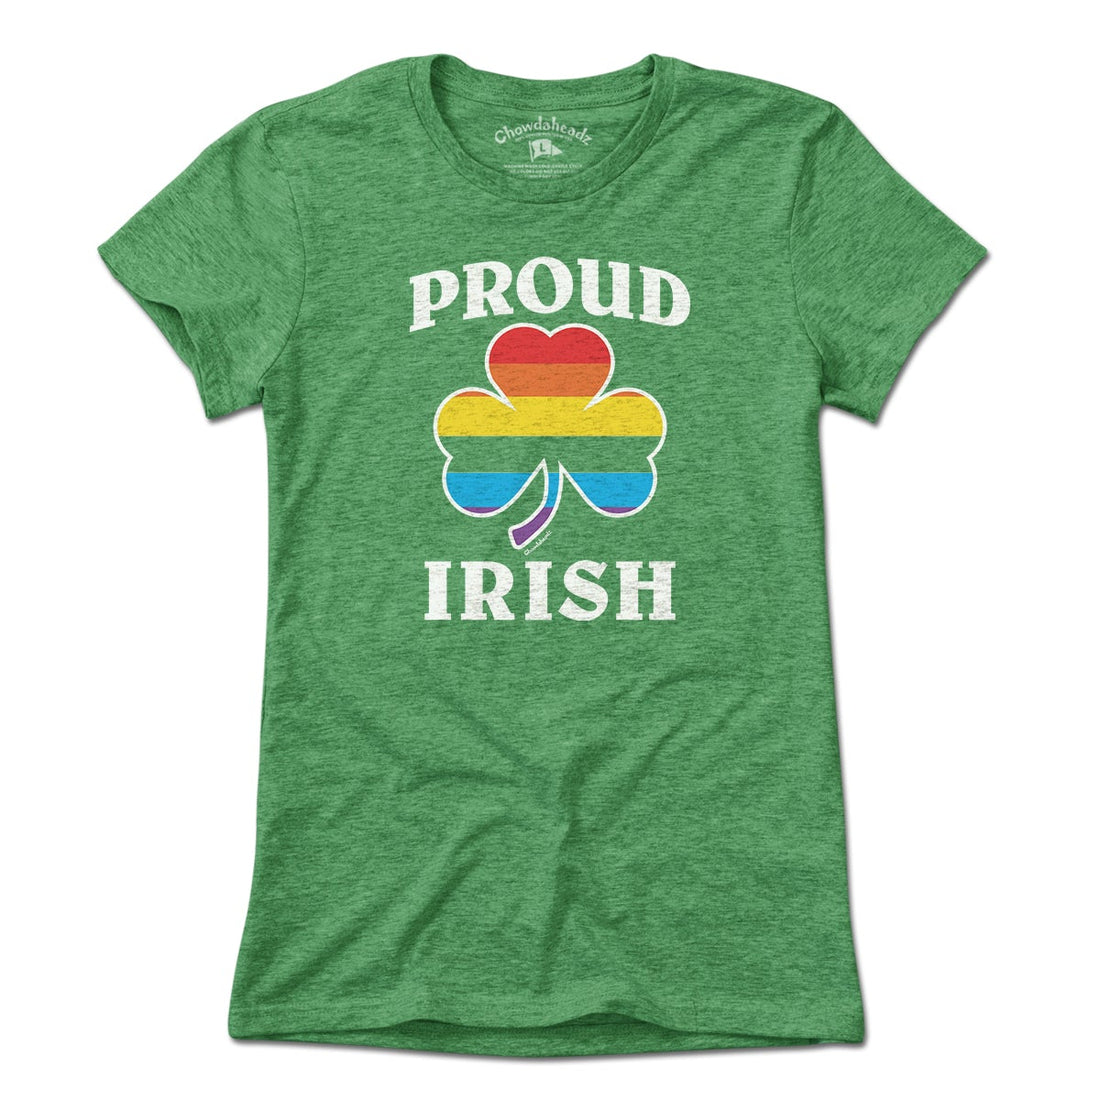 Proud Irish T-Shirt - Chowdaheadz